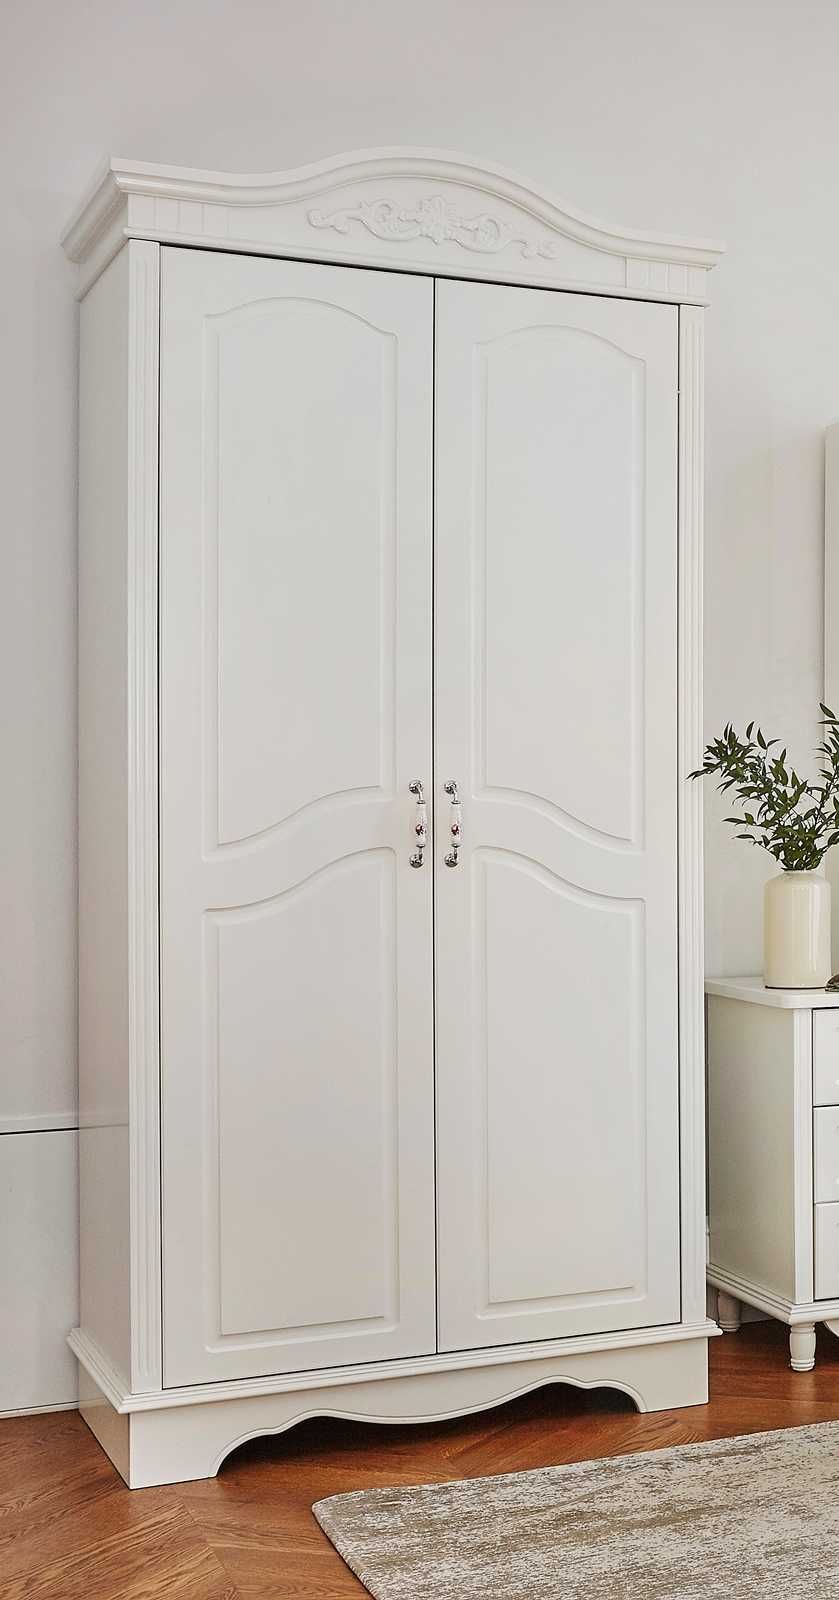 Stylowa biała szafa 2-drzwiowa  107 x 60 x 227, - 60% outlet, tanio!